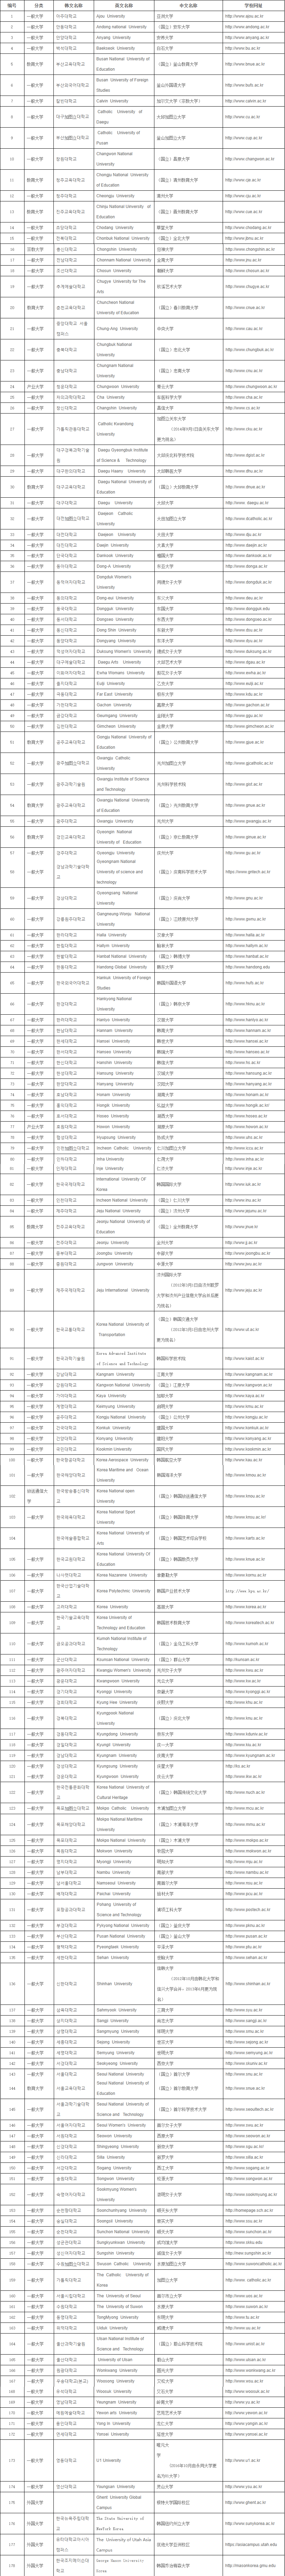 韩国大学名单.png